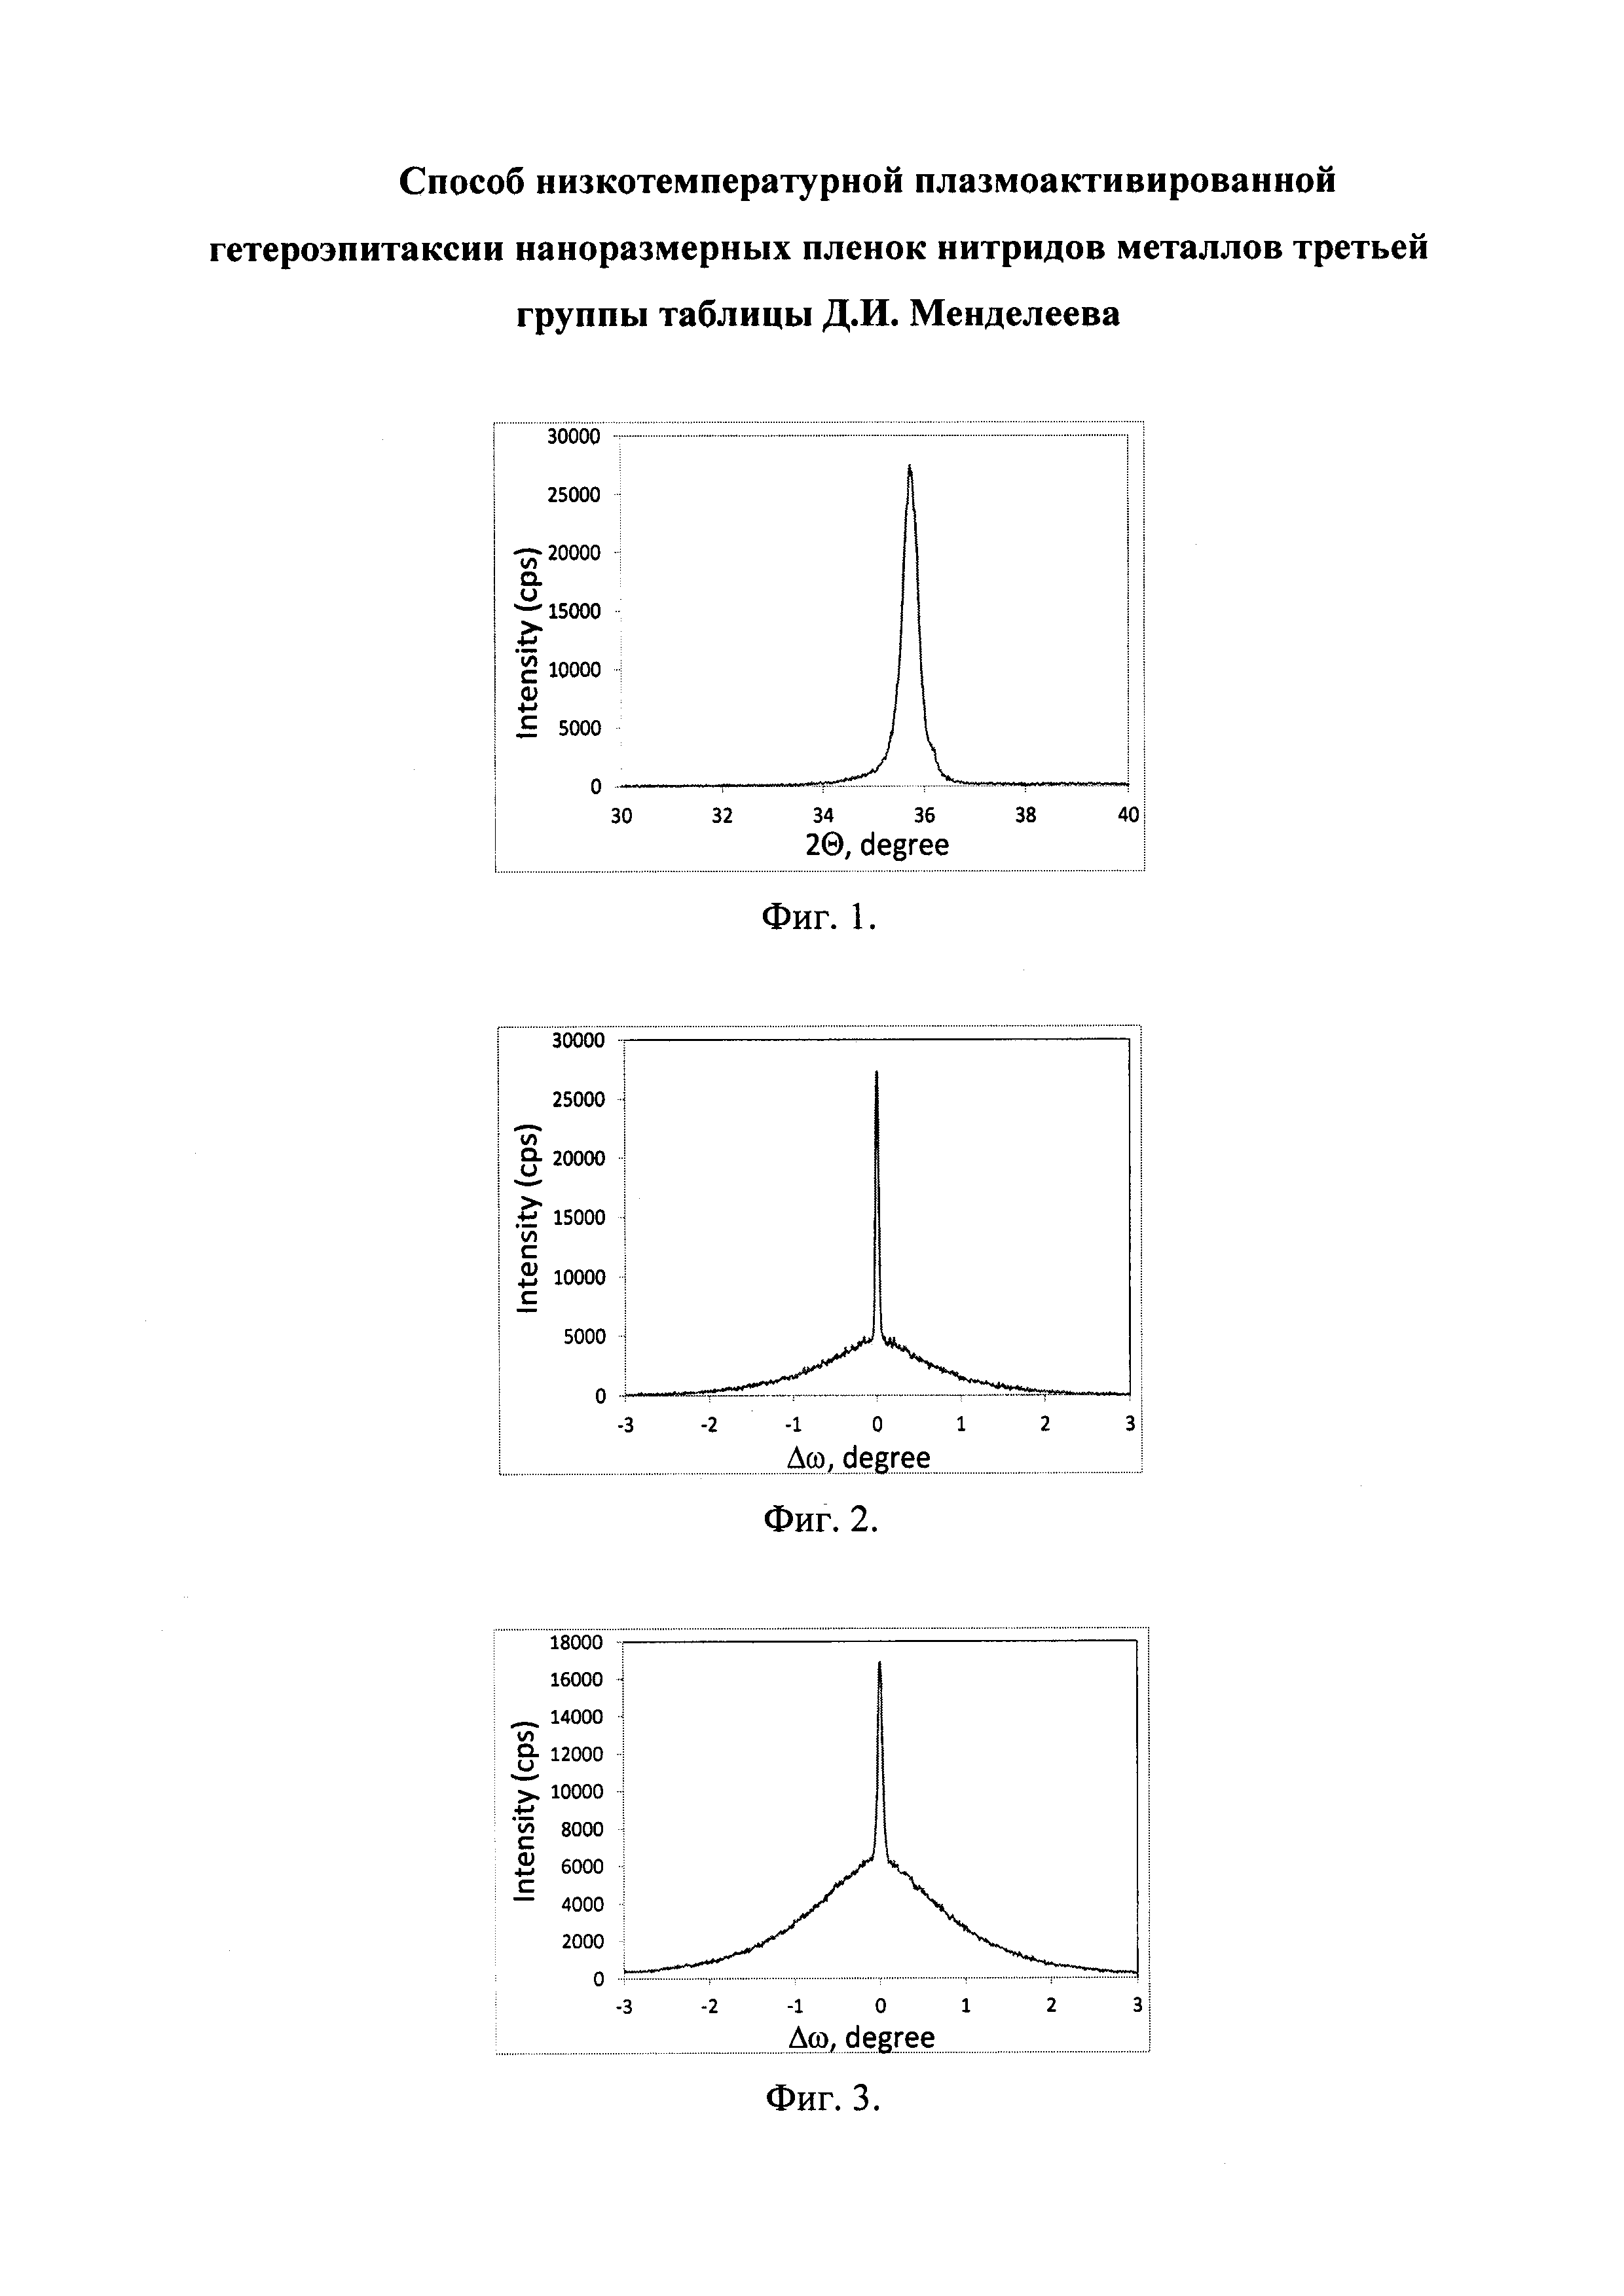 Способ низкотемпературной плазмоактивированной гетероэпитаксии наноразмерных пленок нитридов металлов третьей группы таблицы Д.И. Менделеева